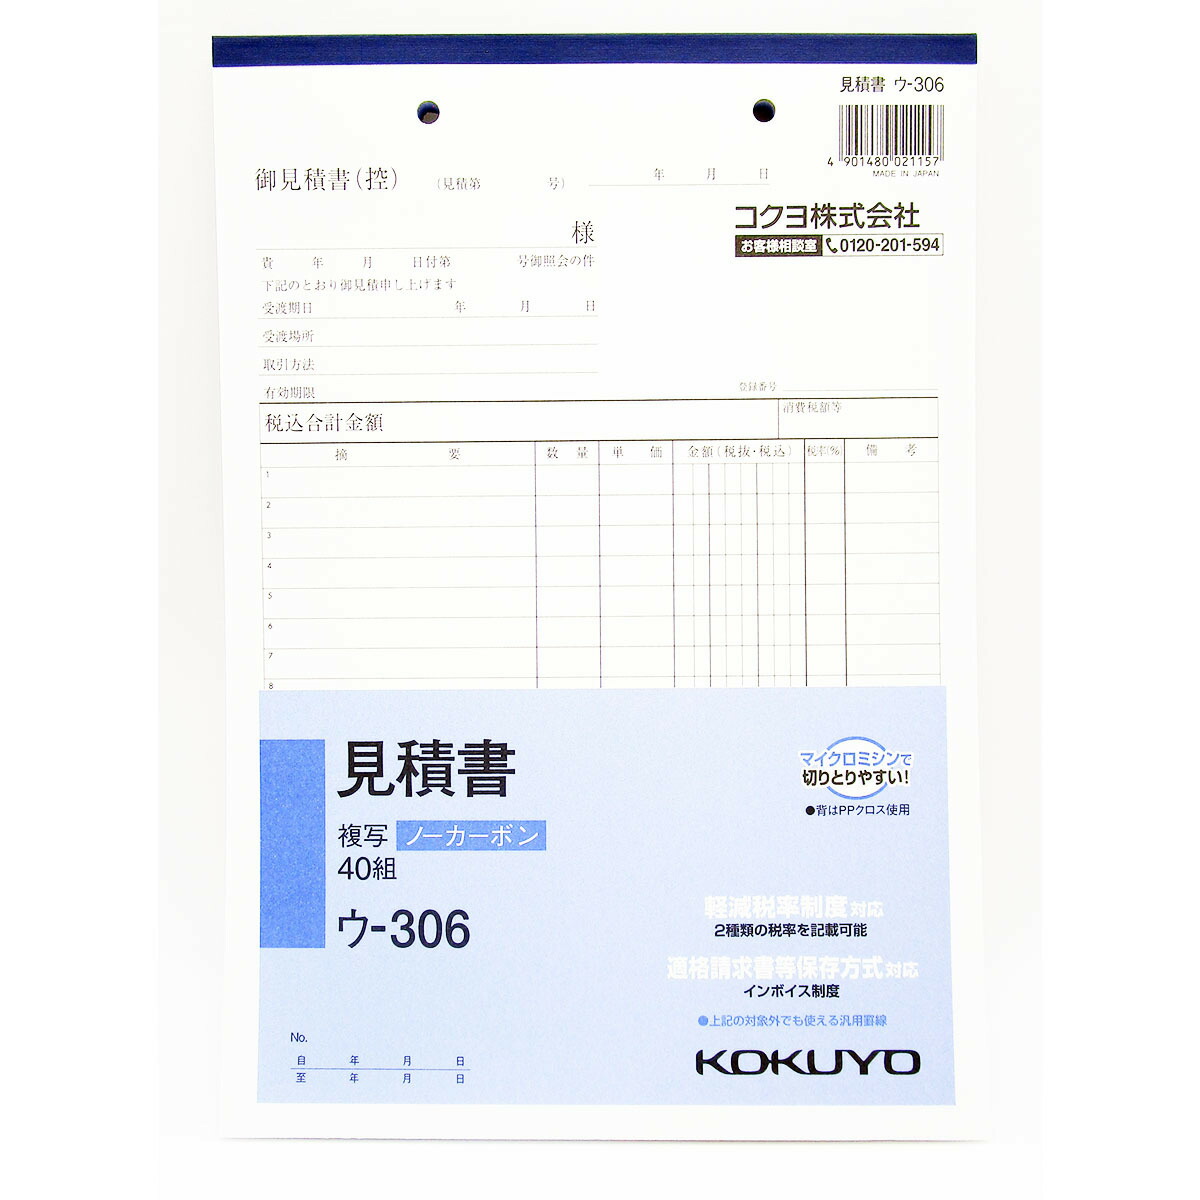 ◇高品質 コクヨ NC複写簿 ノーカーボン 見積書 A4タテ型 22行40組 10冊セット ウ-386